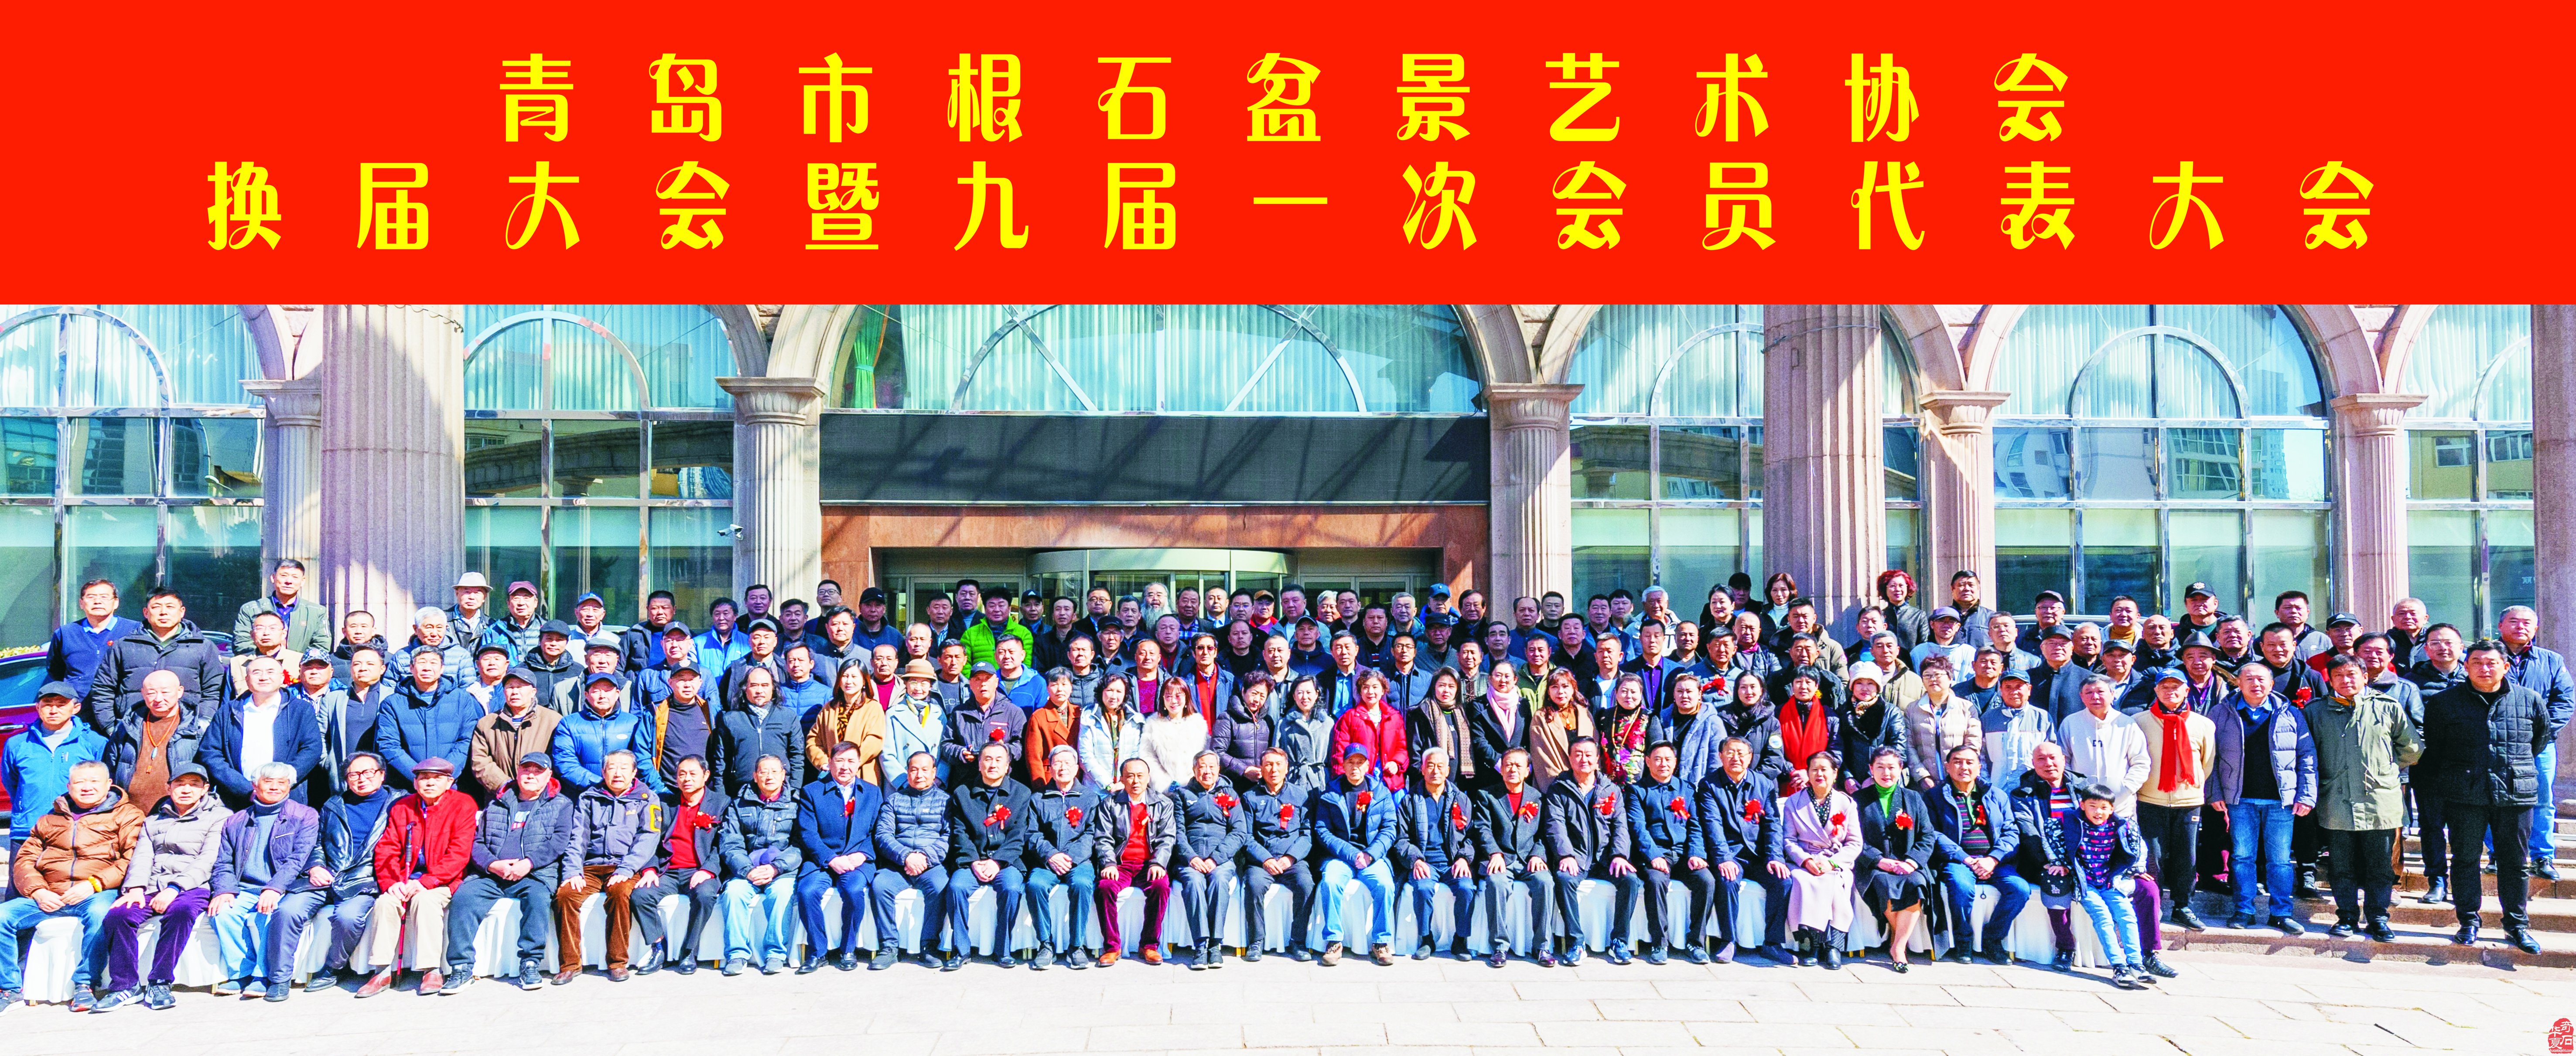 热烈祝贺崔周村当选新一届青岛市根石盆景艺术协会会长